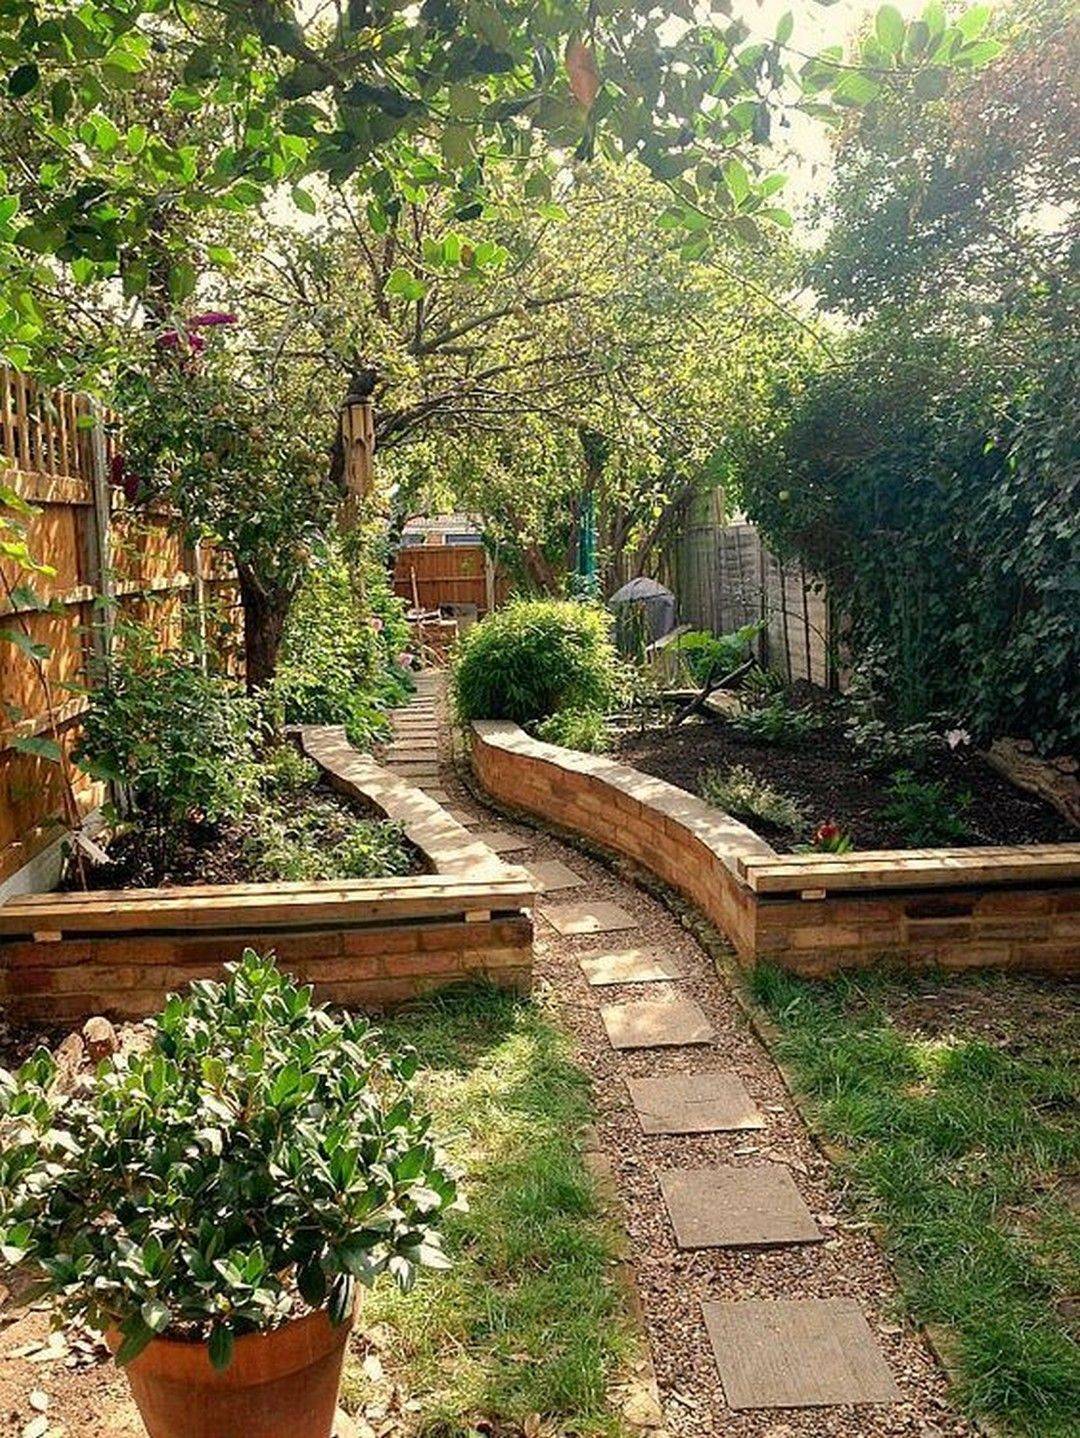 The Home English Garden Design